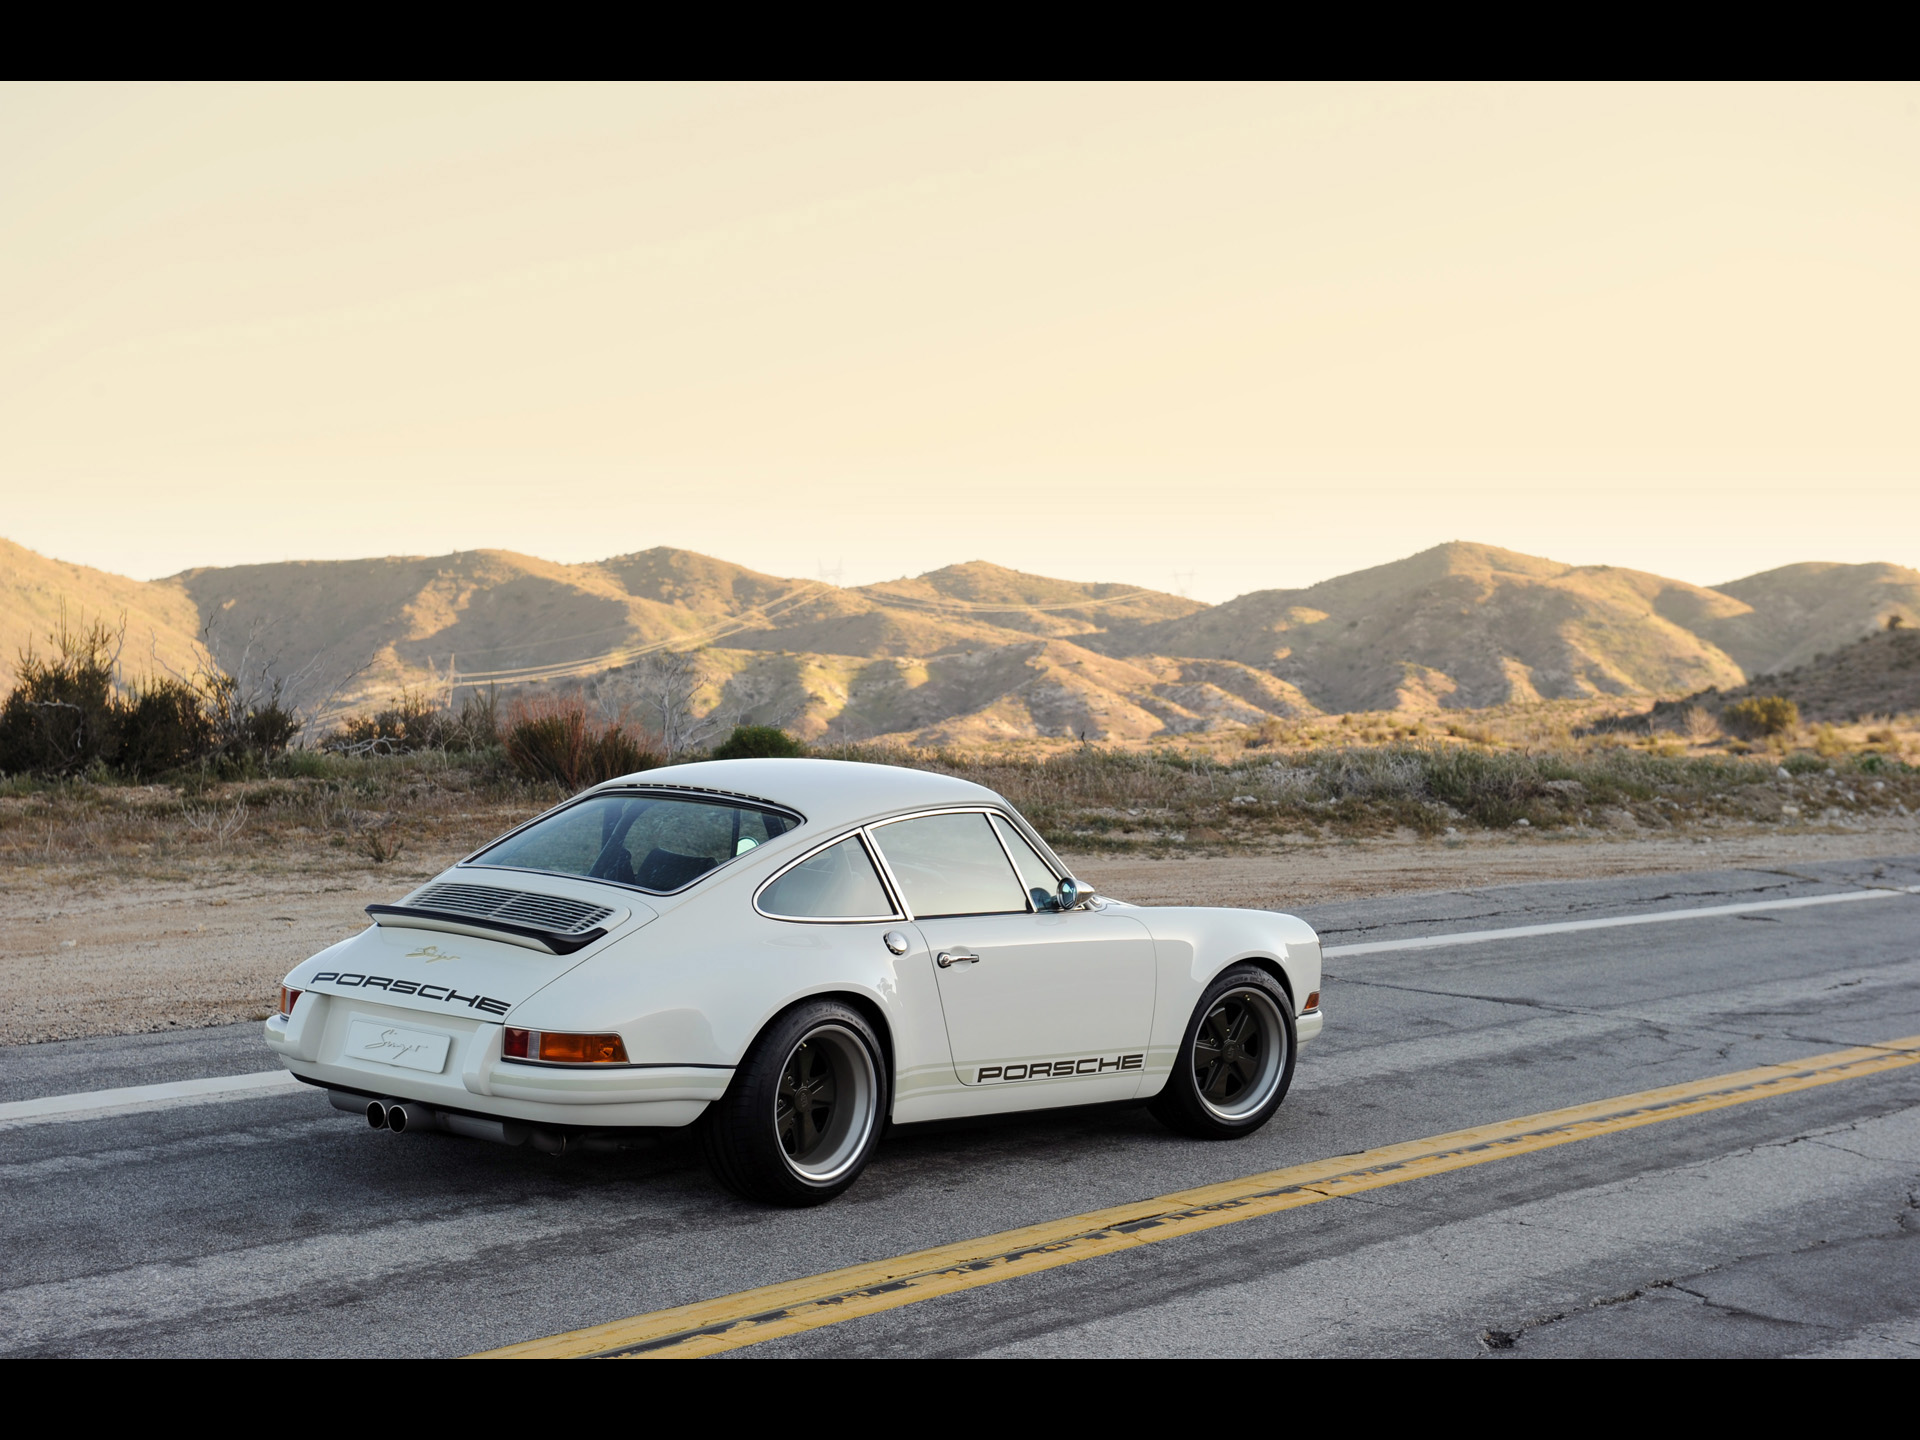 Singer iPhone Wallpaper Previous White Porsche Side